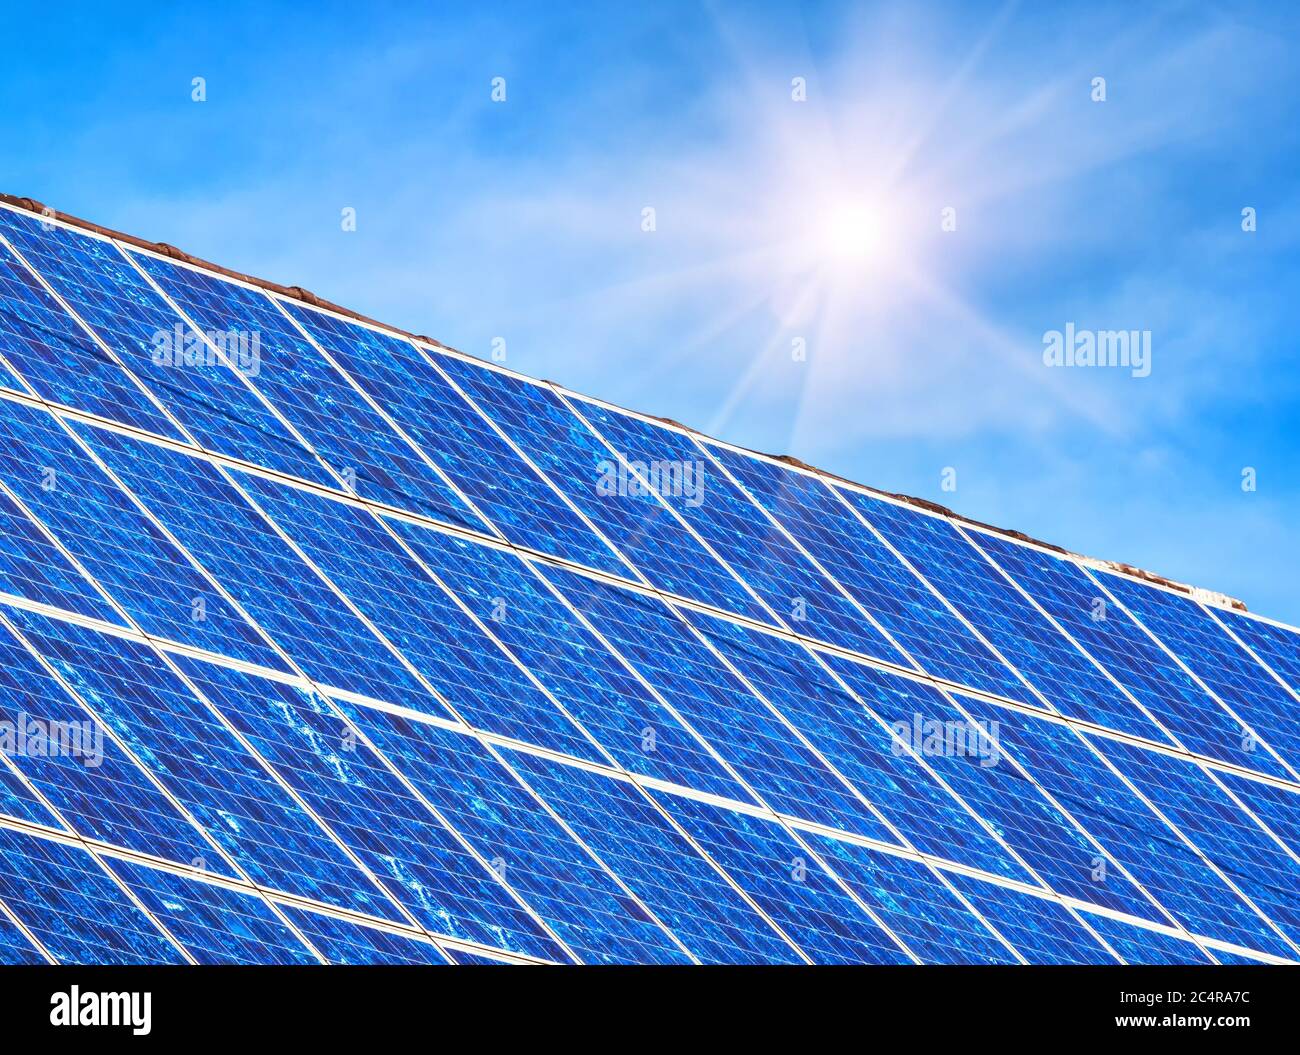 Solarpanel auf Wohnhausdach. Viele blaue Solarzellen auf dem Gebäudetisch für alternative Energie. Photovoltaik-Öko-Paneele für Strom aus c Stockfoto